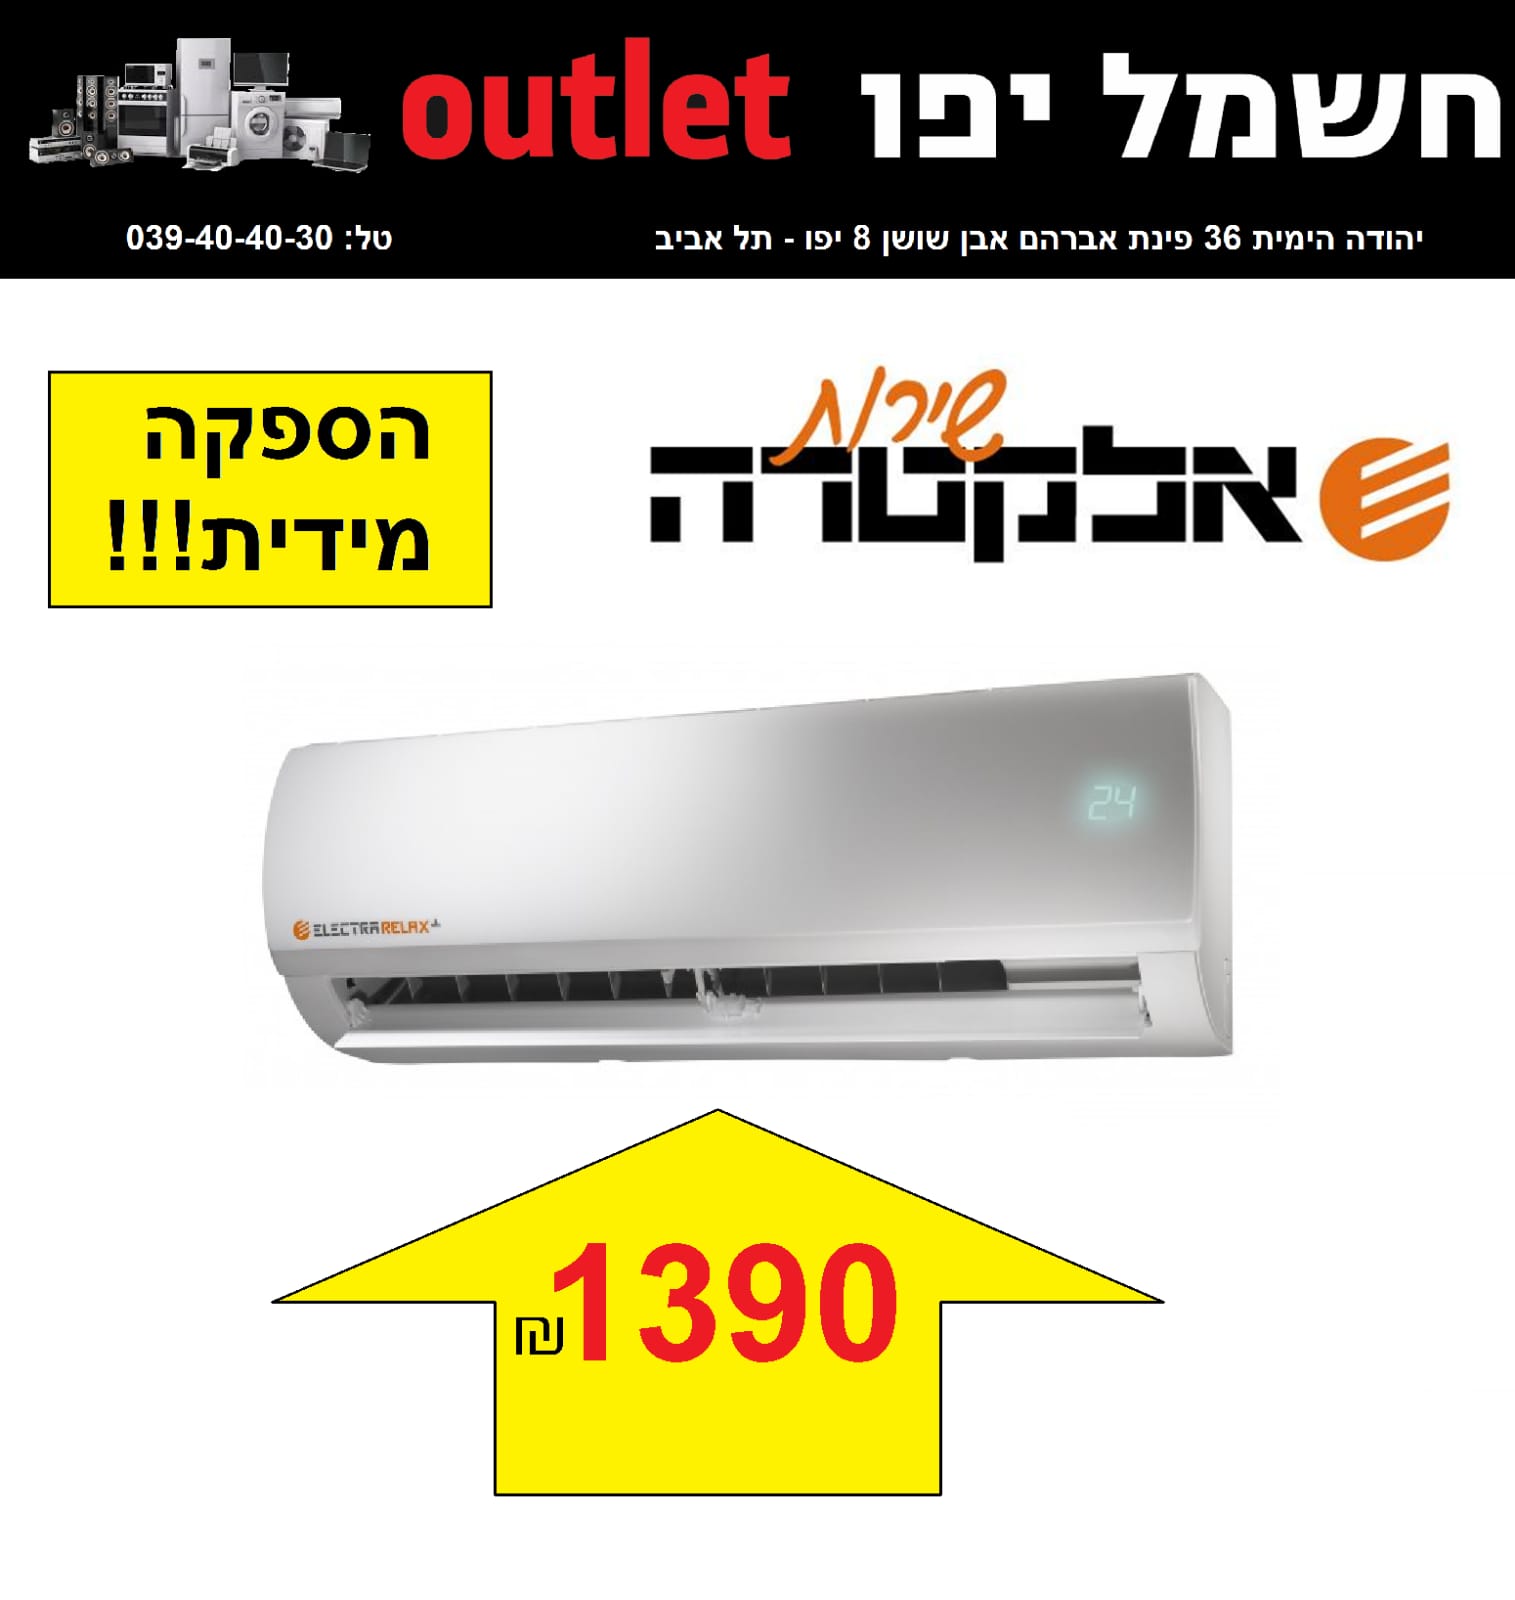 صالة كهرباء يافا Outlet - حملة تخفيضات على الأجهزة الكهربائية